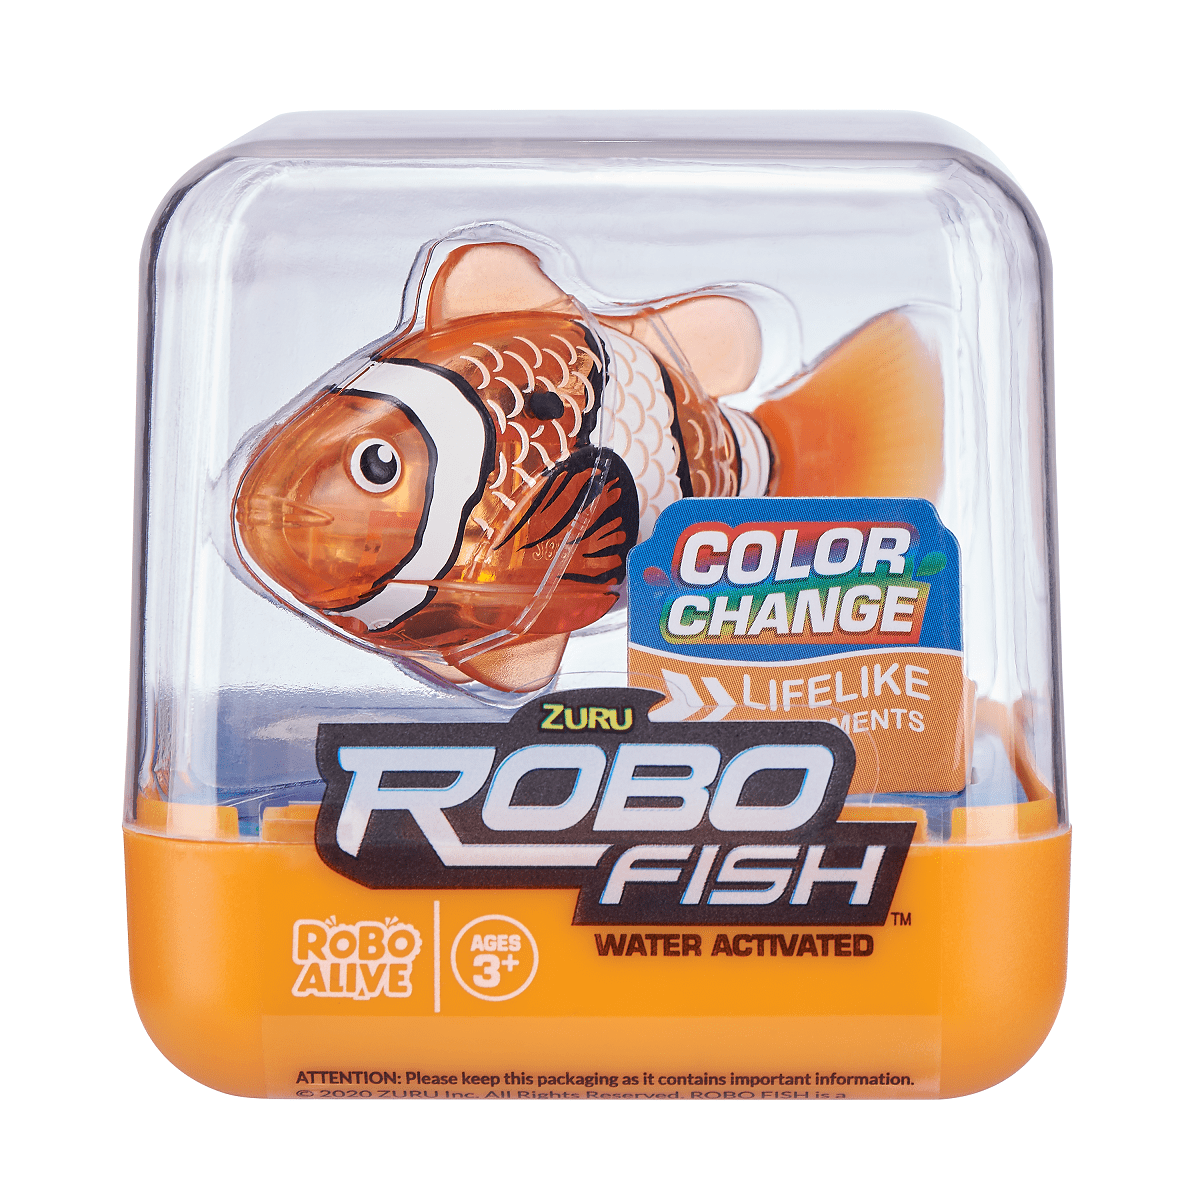 Robo Alive Robotic Robo Fish 